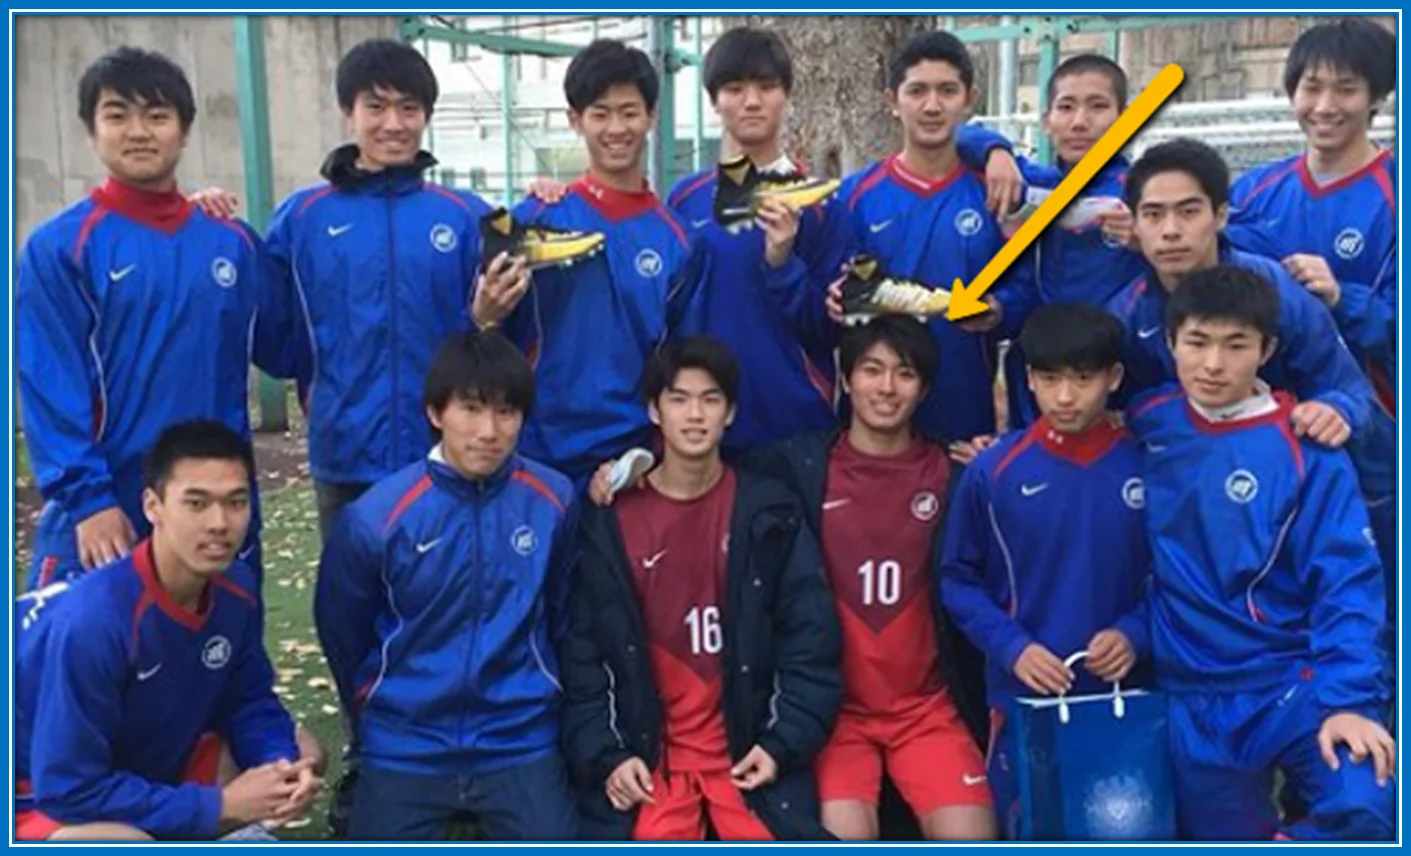 An early photo of Keito Nakamura's Youth career at Mitsubishi Yowa.